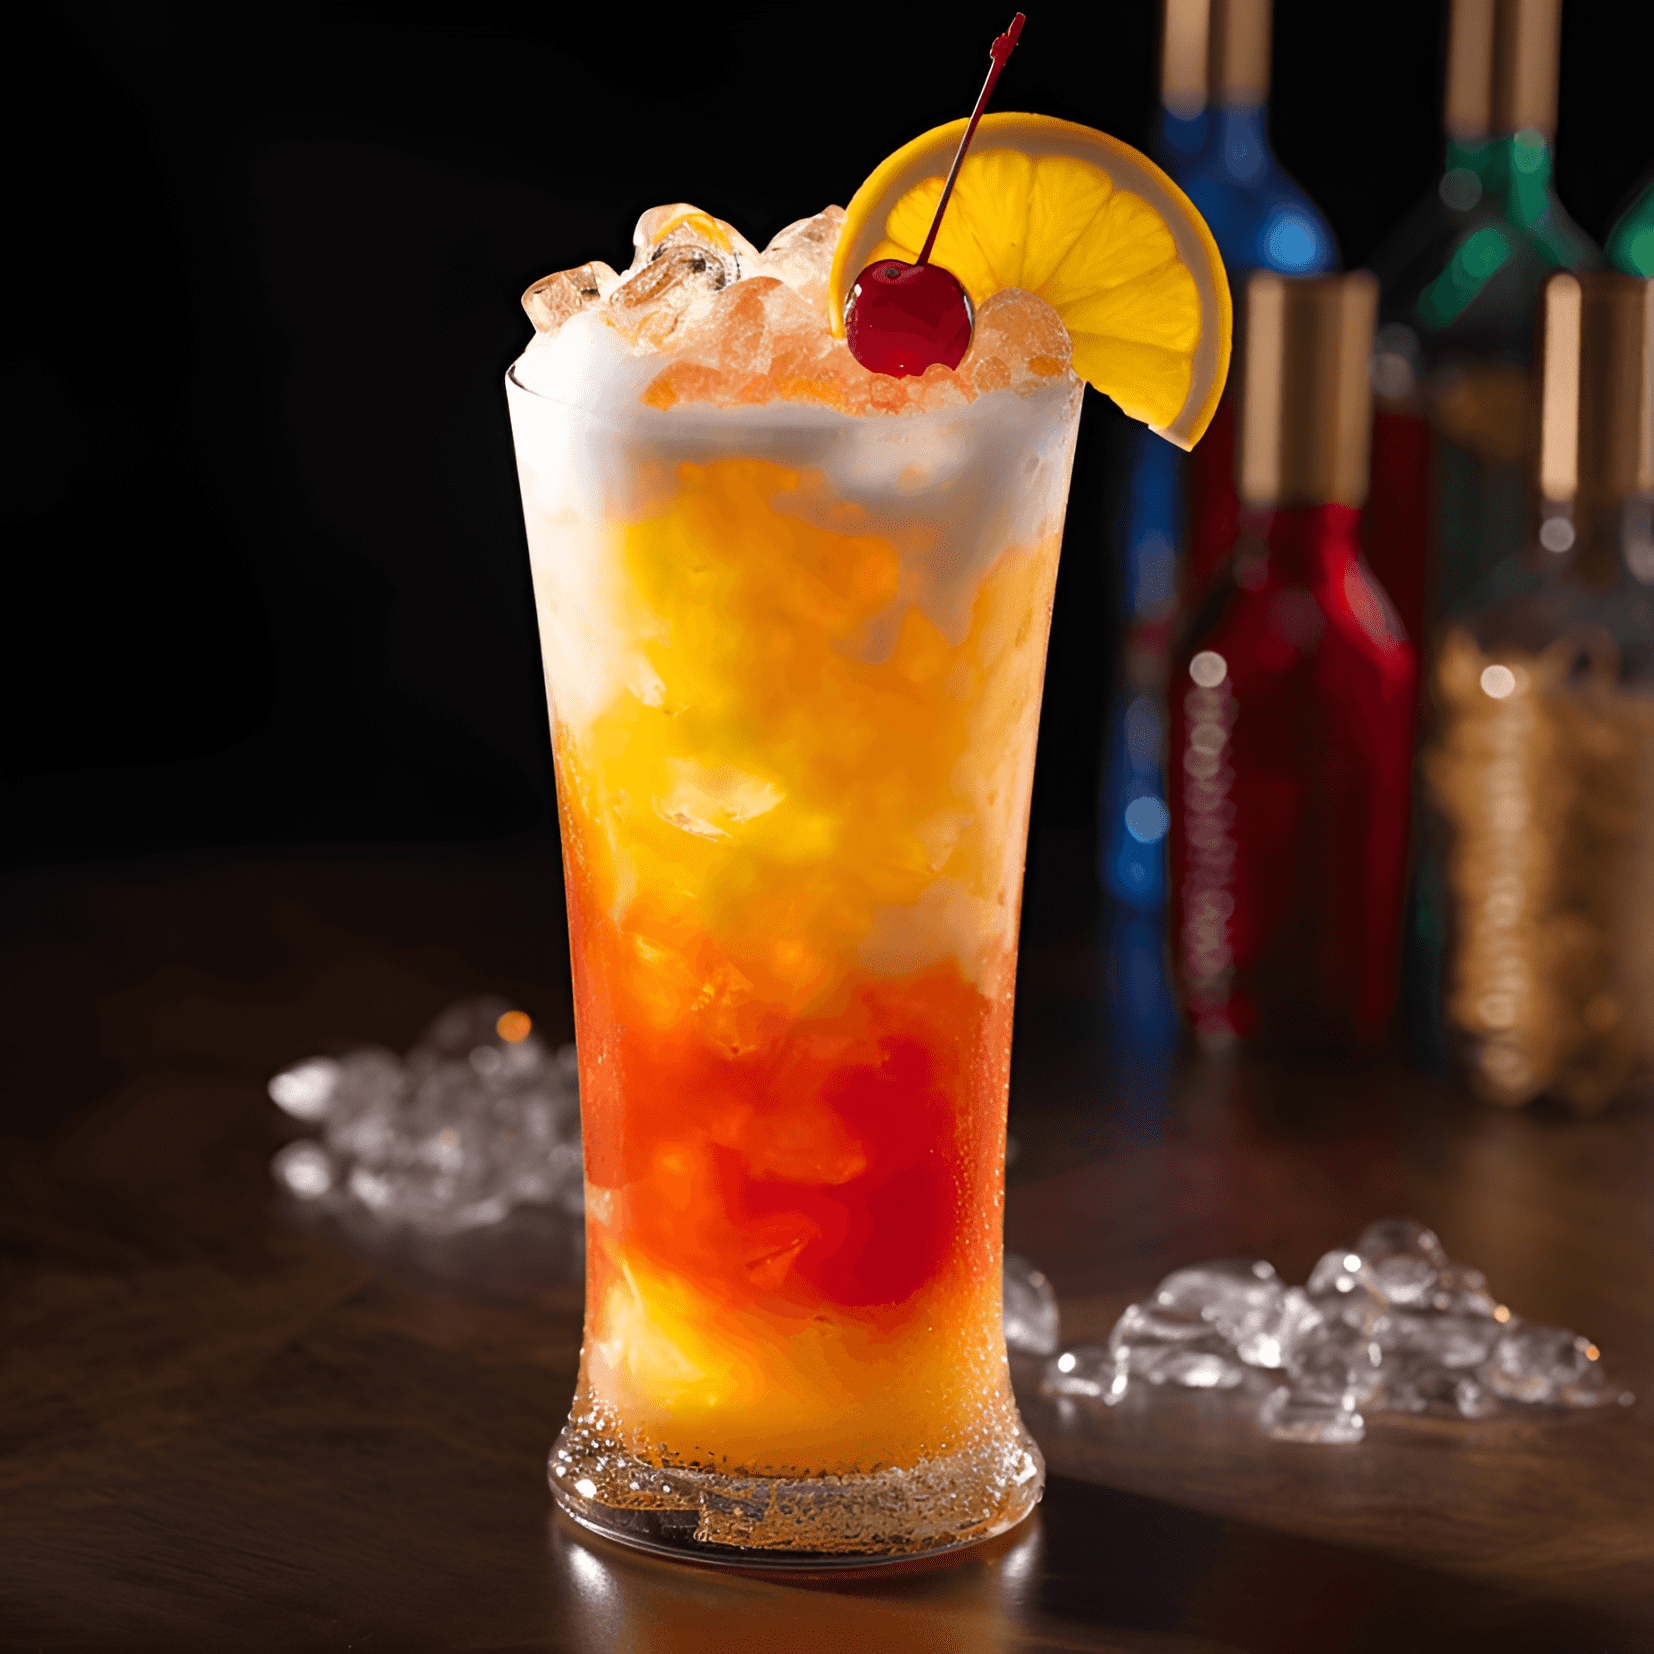 El Rum Runner es un cóctel dulce y afrutado con un toque de acidez. Sus sabores son una armoniosa mezcla de frutas tropicales, con el ron proporcionando una base suave y cálida. La bebida es refrescante y satisfactoria, lo que la hace perfecta para beber en un día caluroso de verano.